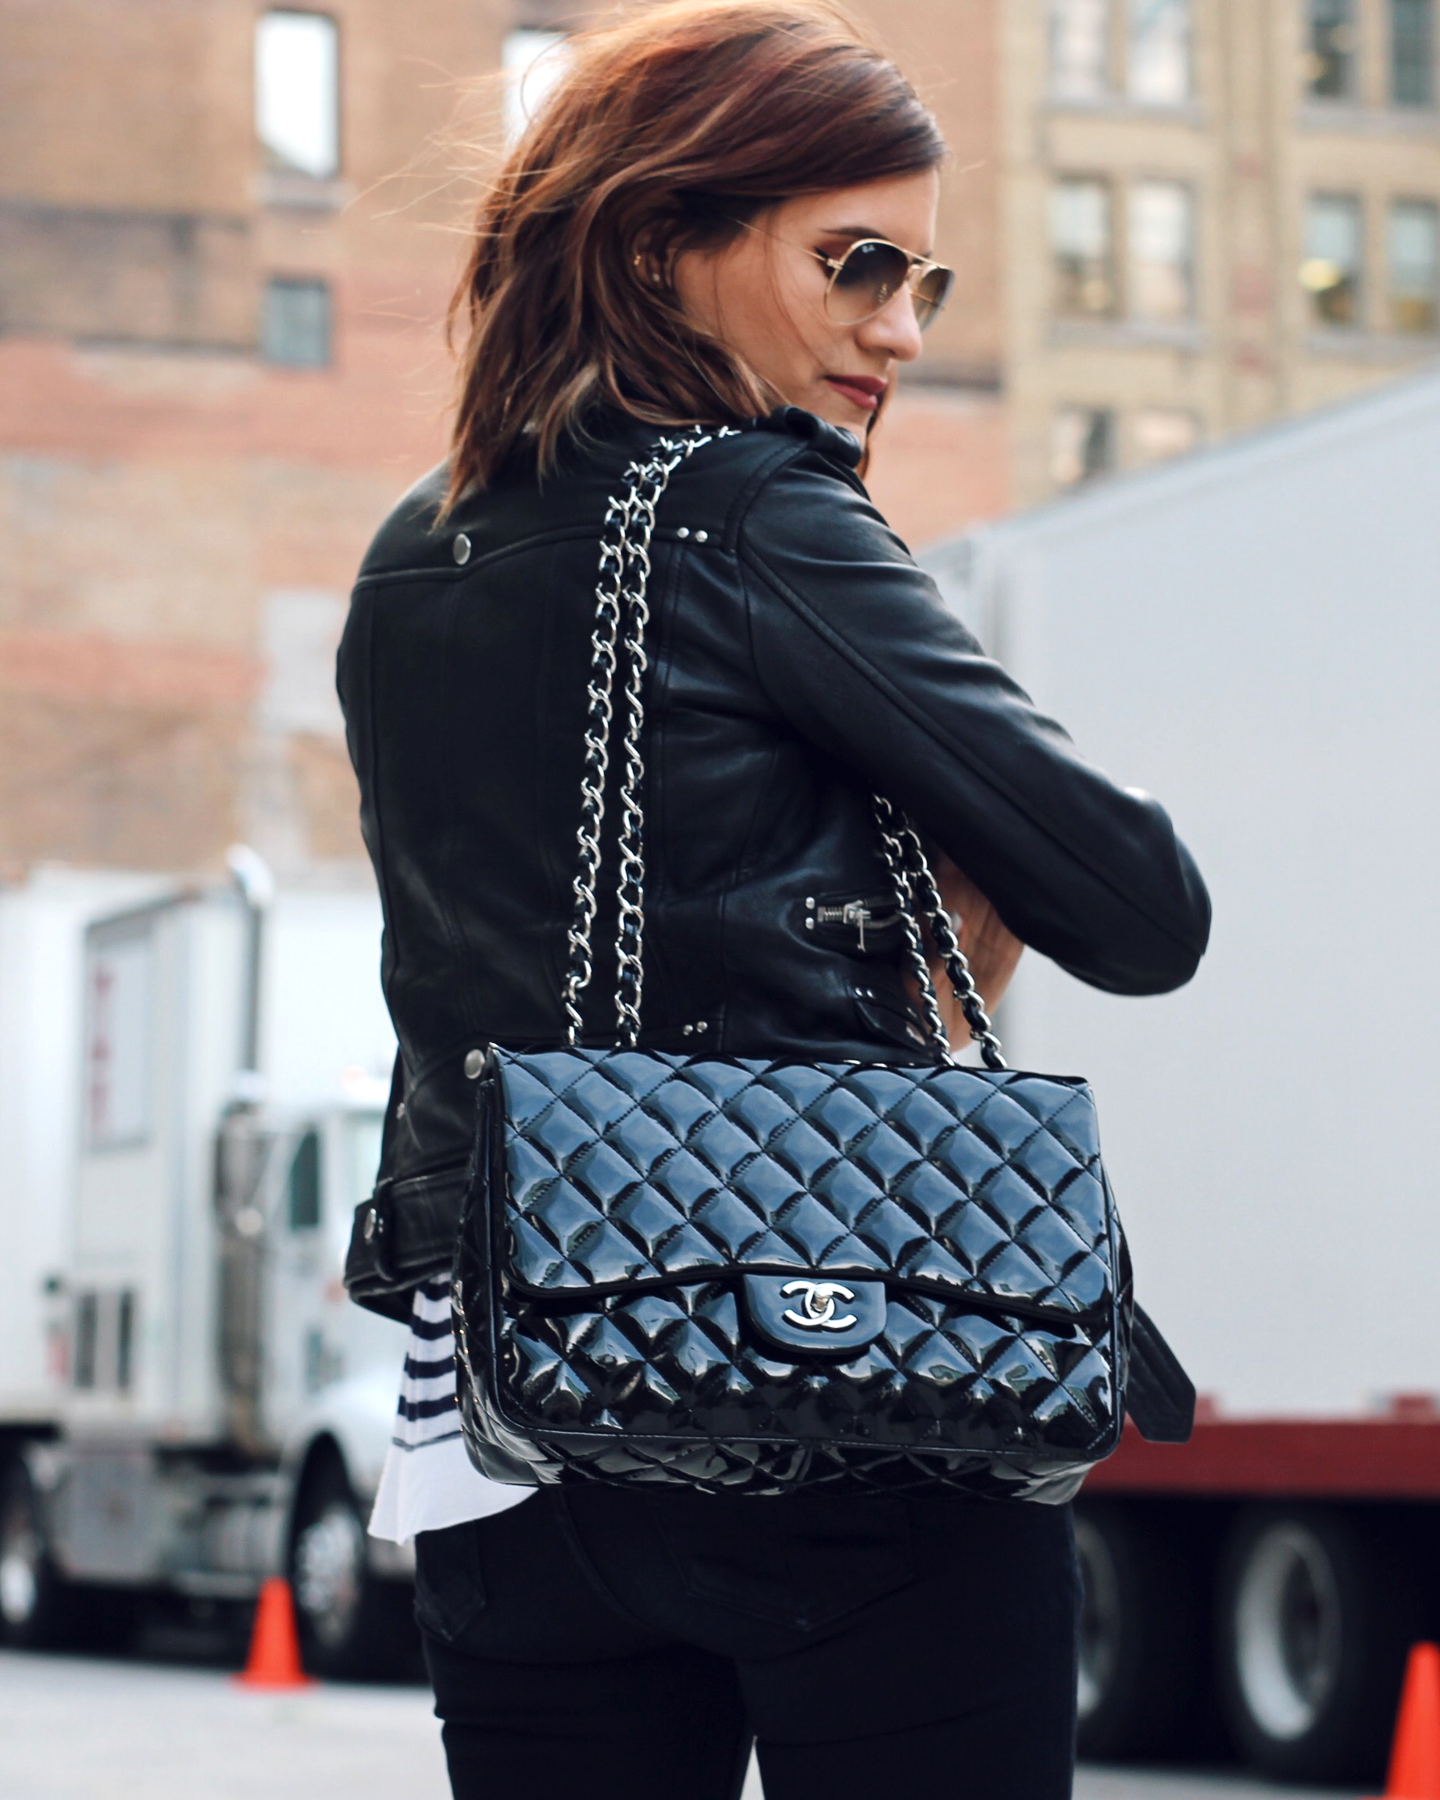 My Chanel patent leather Jumbo bag — WOAHSTYLE